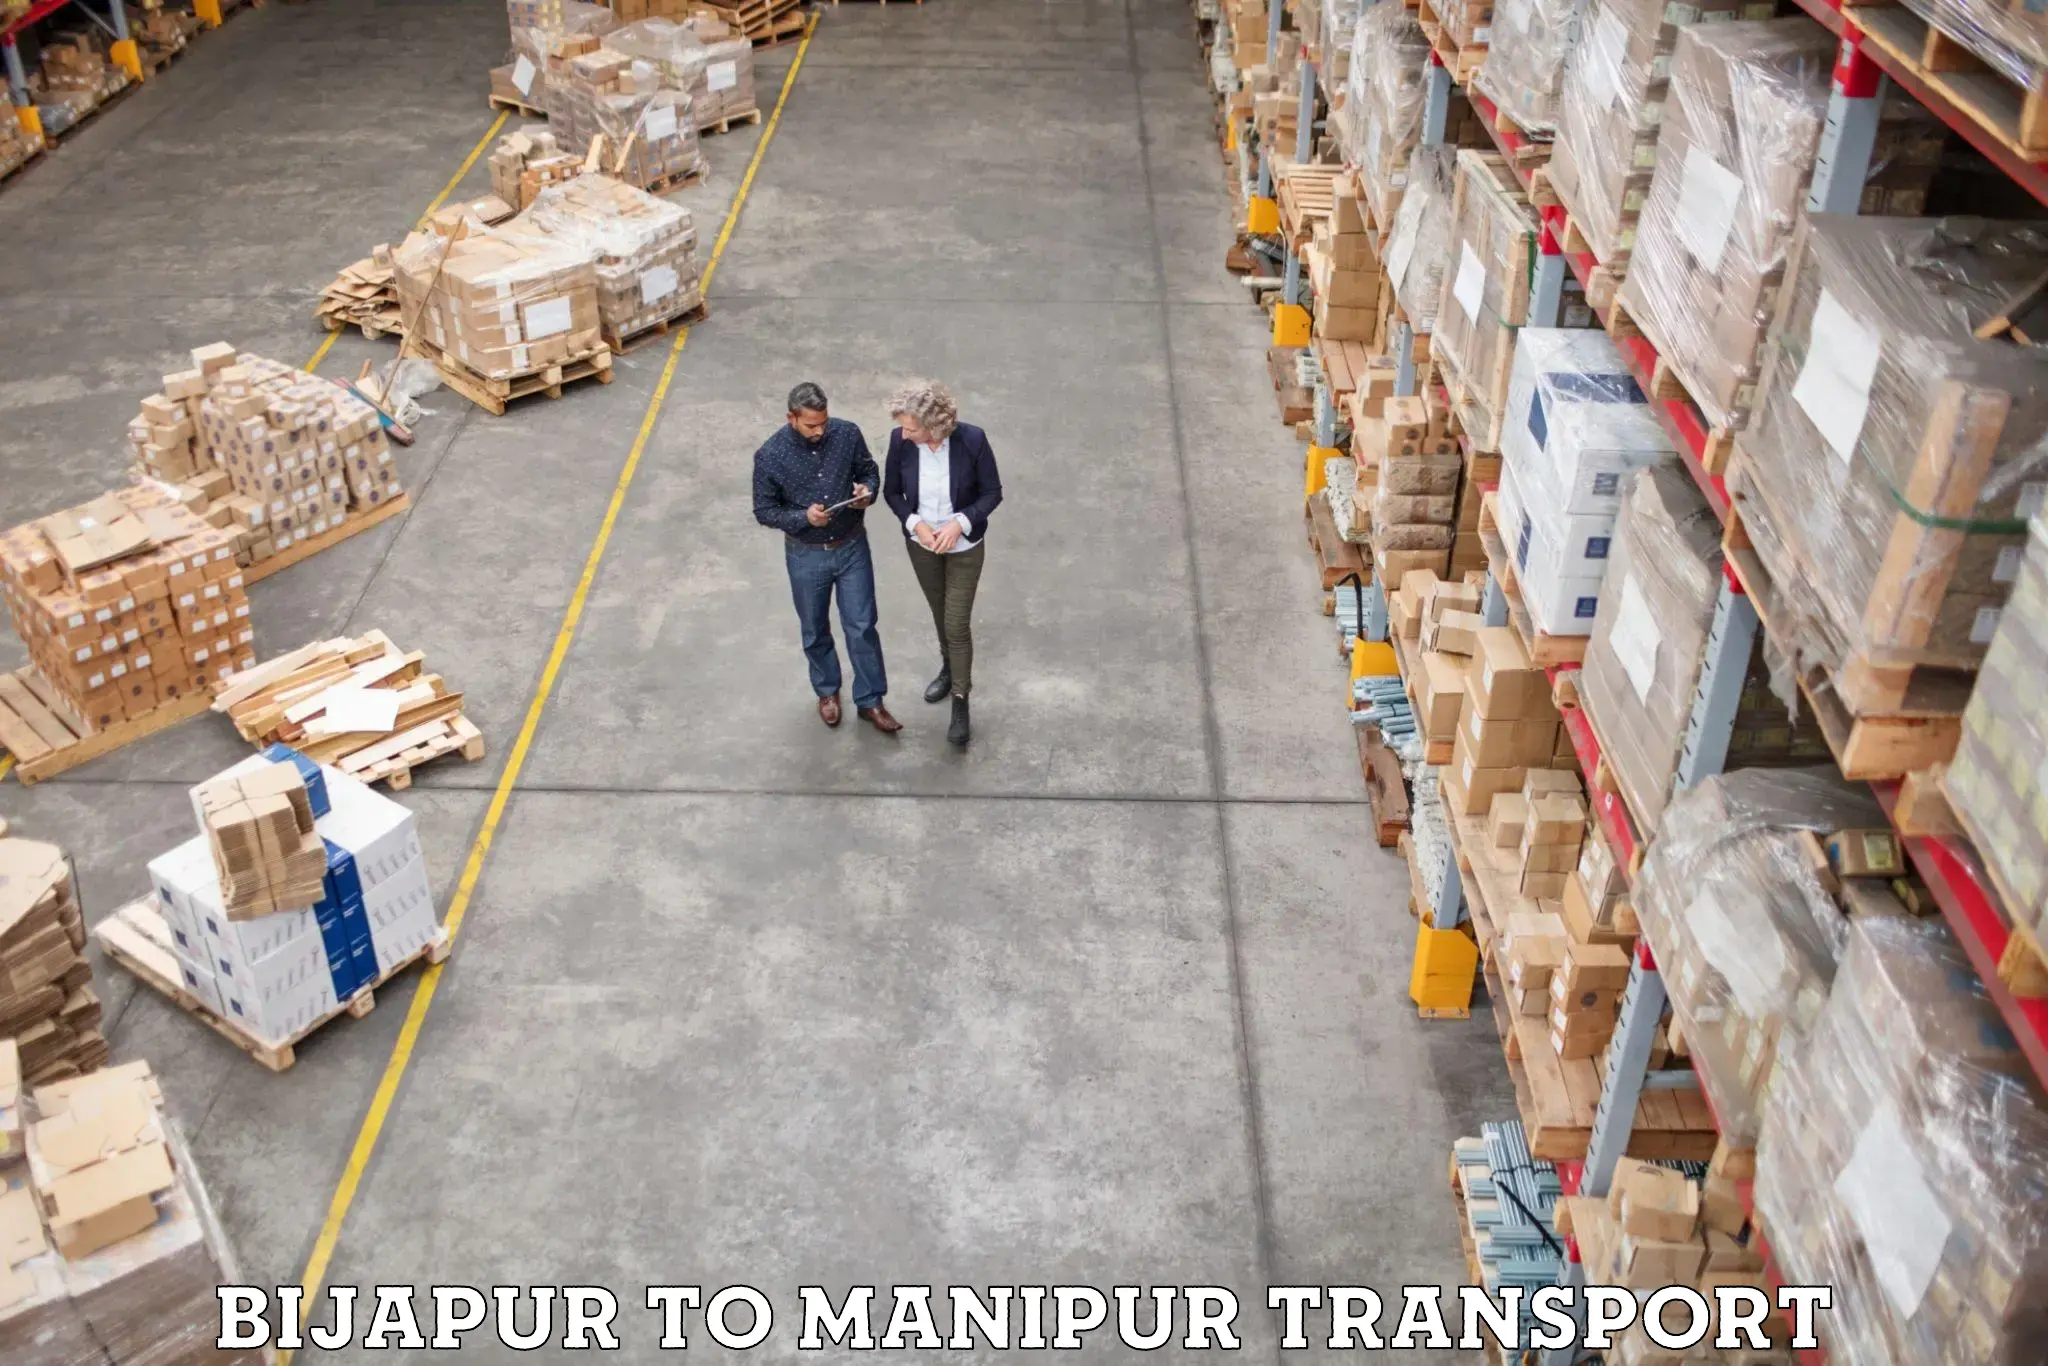 Furniture transport service Bijapur to Moirang